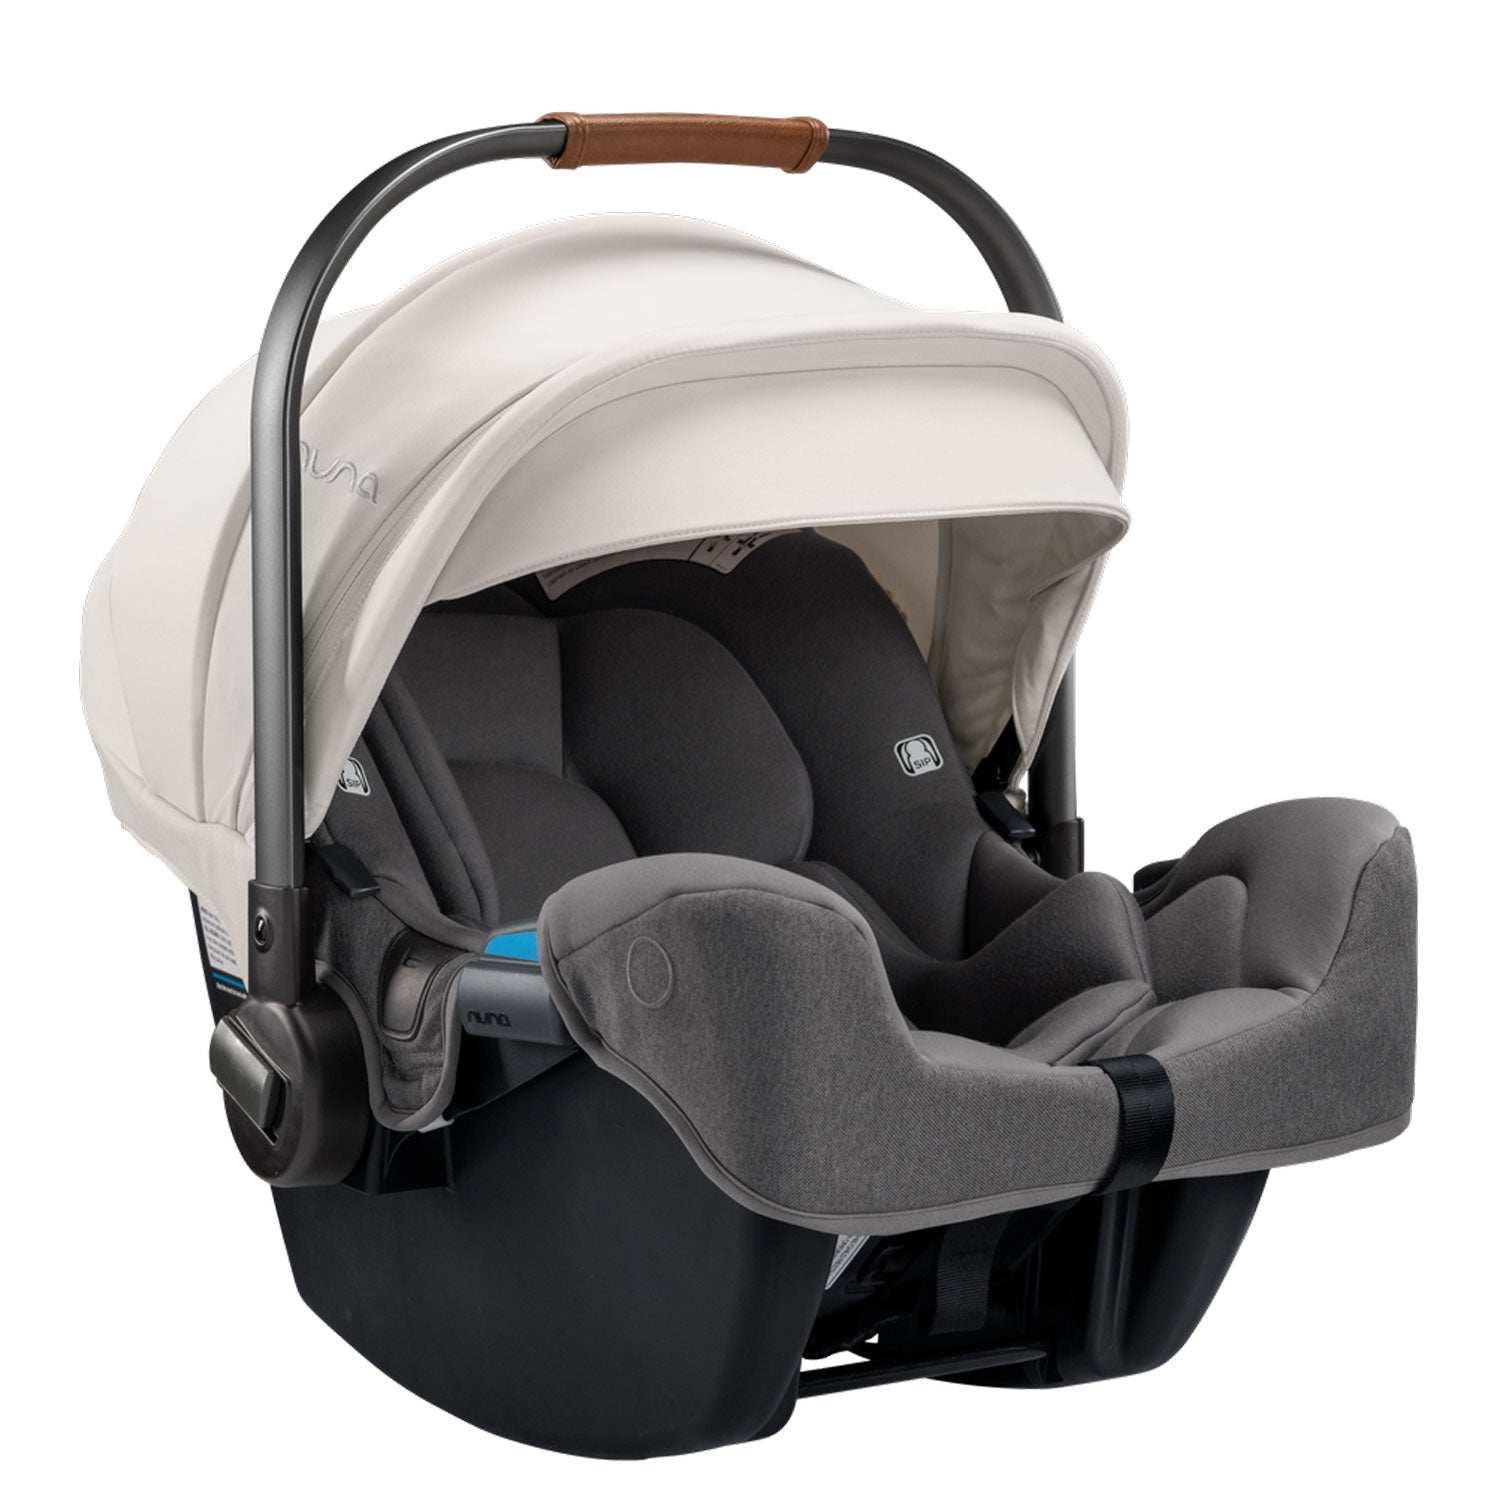 Nuna PIPA RX Infant Car Seat with RELX Base - Birch